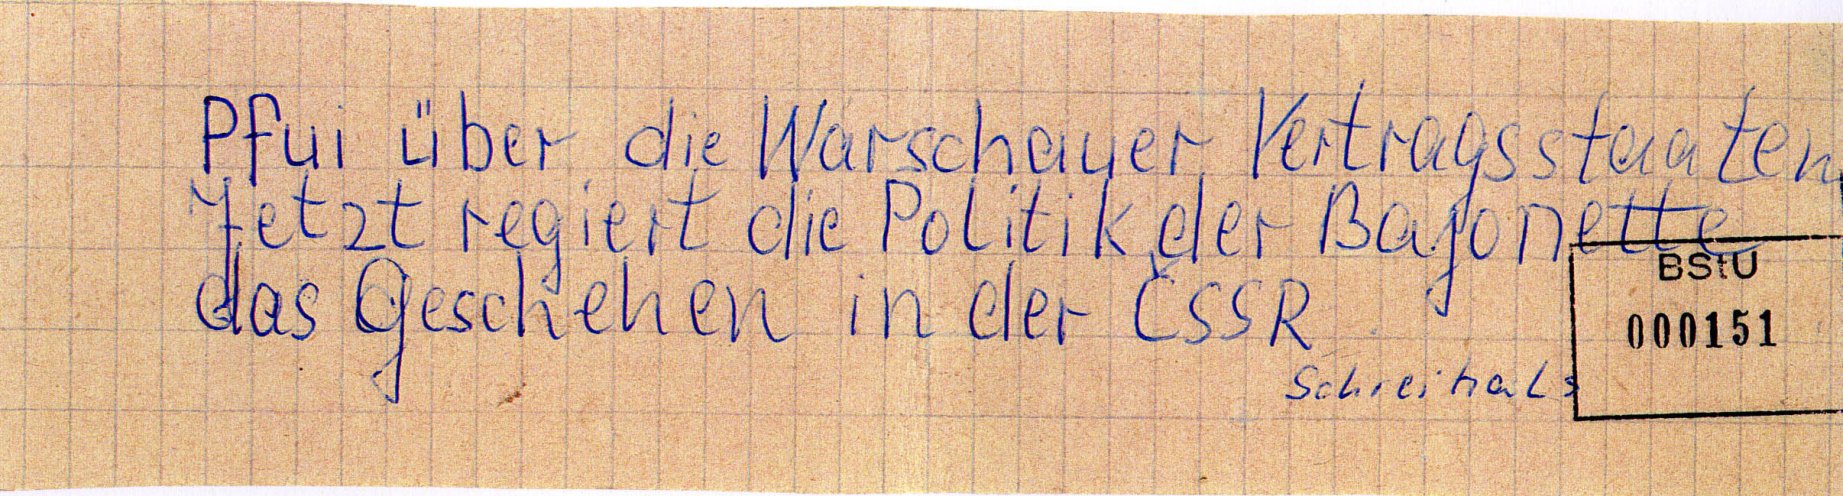 In Schwerin schreibt ein 21-jähriger Flugblätter gegen den Einmarsch der Warschauer-Pakt-Truppen in die CSSR und verteilt diese in Hausbriefkästen in seiner Wohngegend. Quelle: BStU, MfS, BV Schwerin, AU 11/69, GA Bd. 3, Bl. 151, Seite 5 von 10